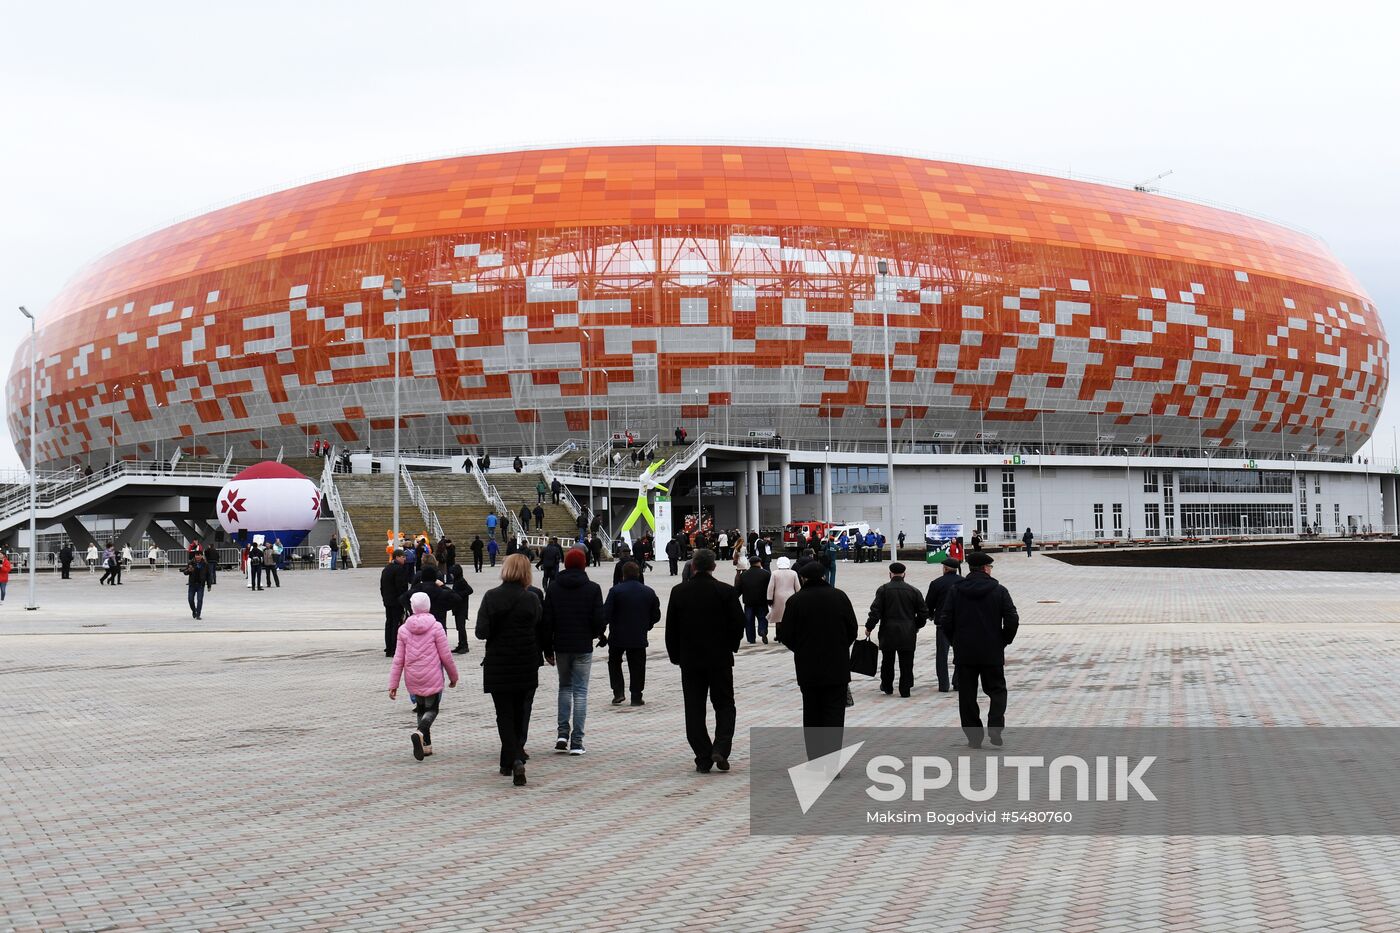 Mordovia Arena in Saransk